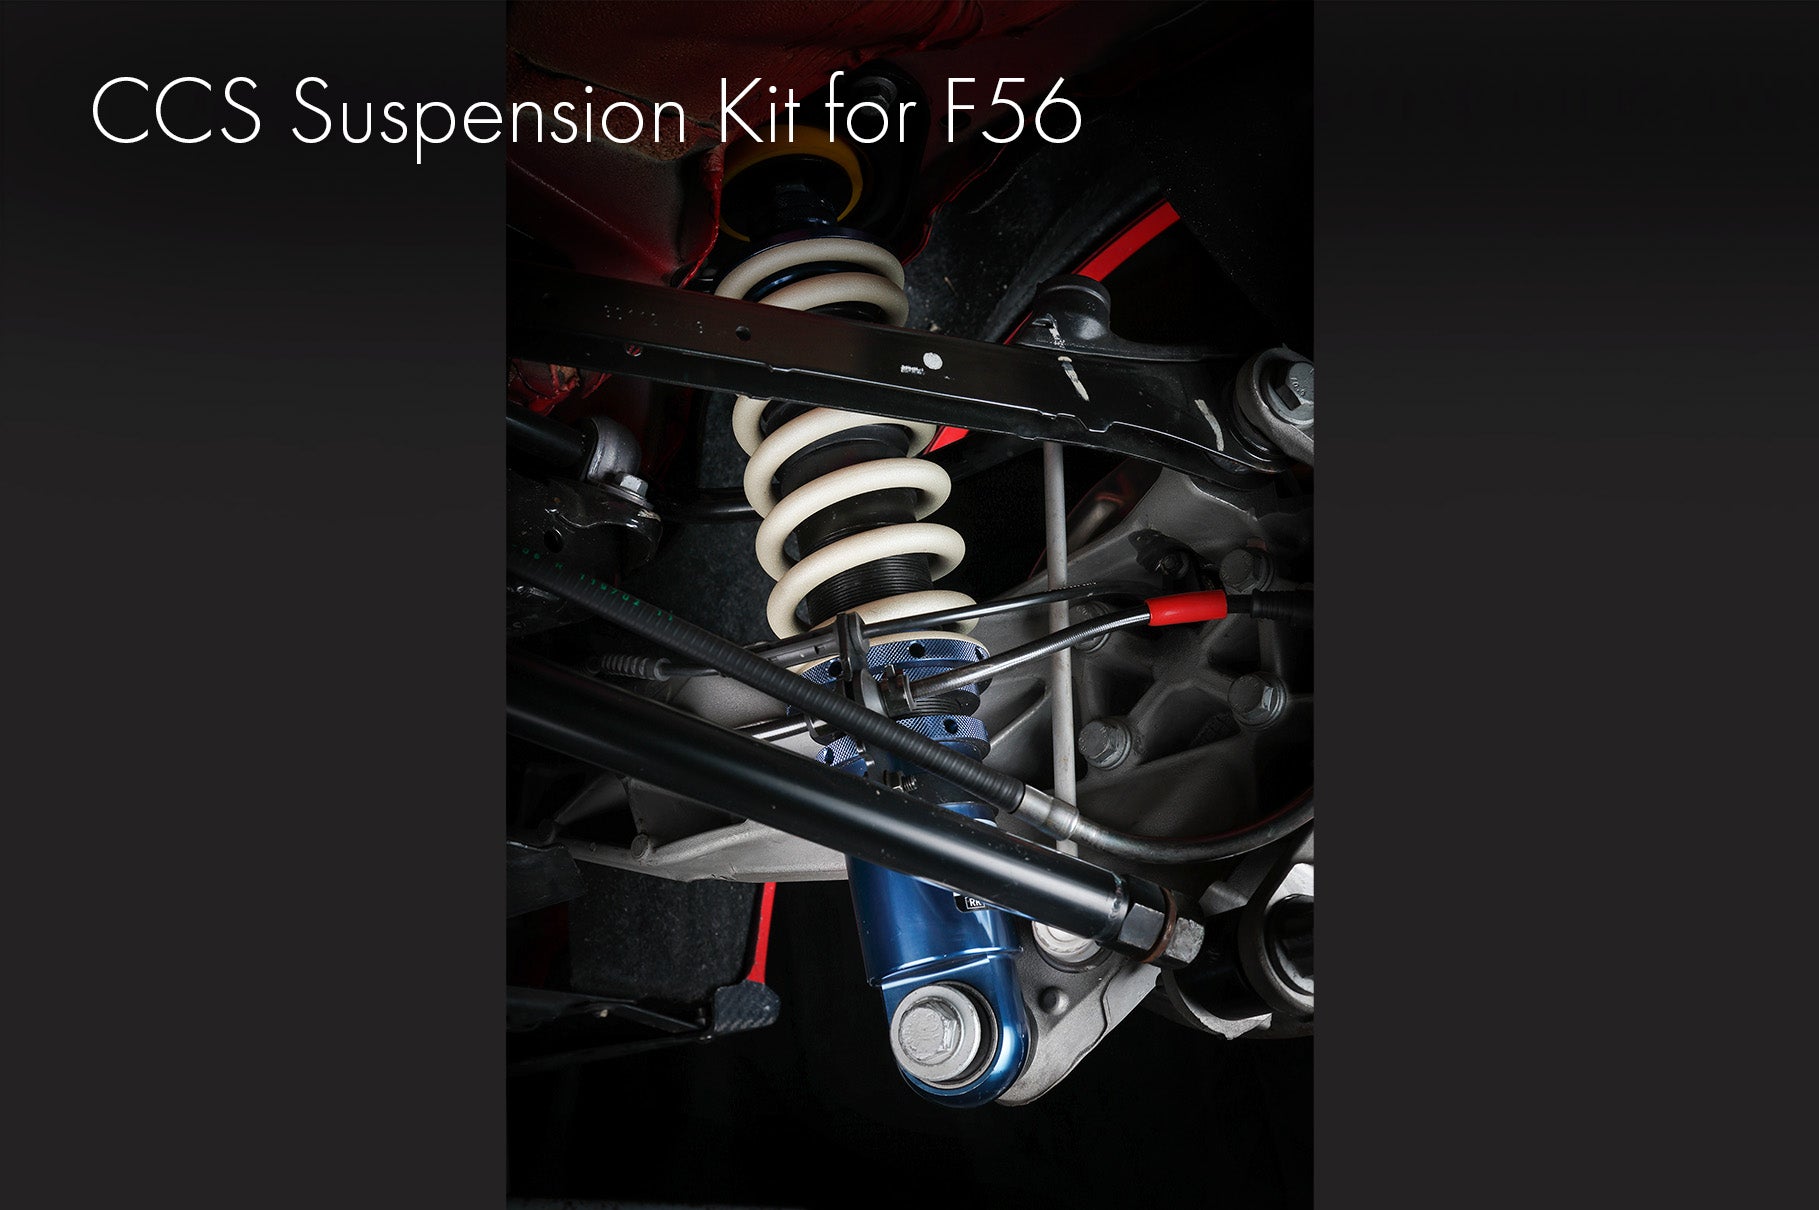 C.C.S. Suspension Kit